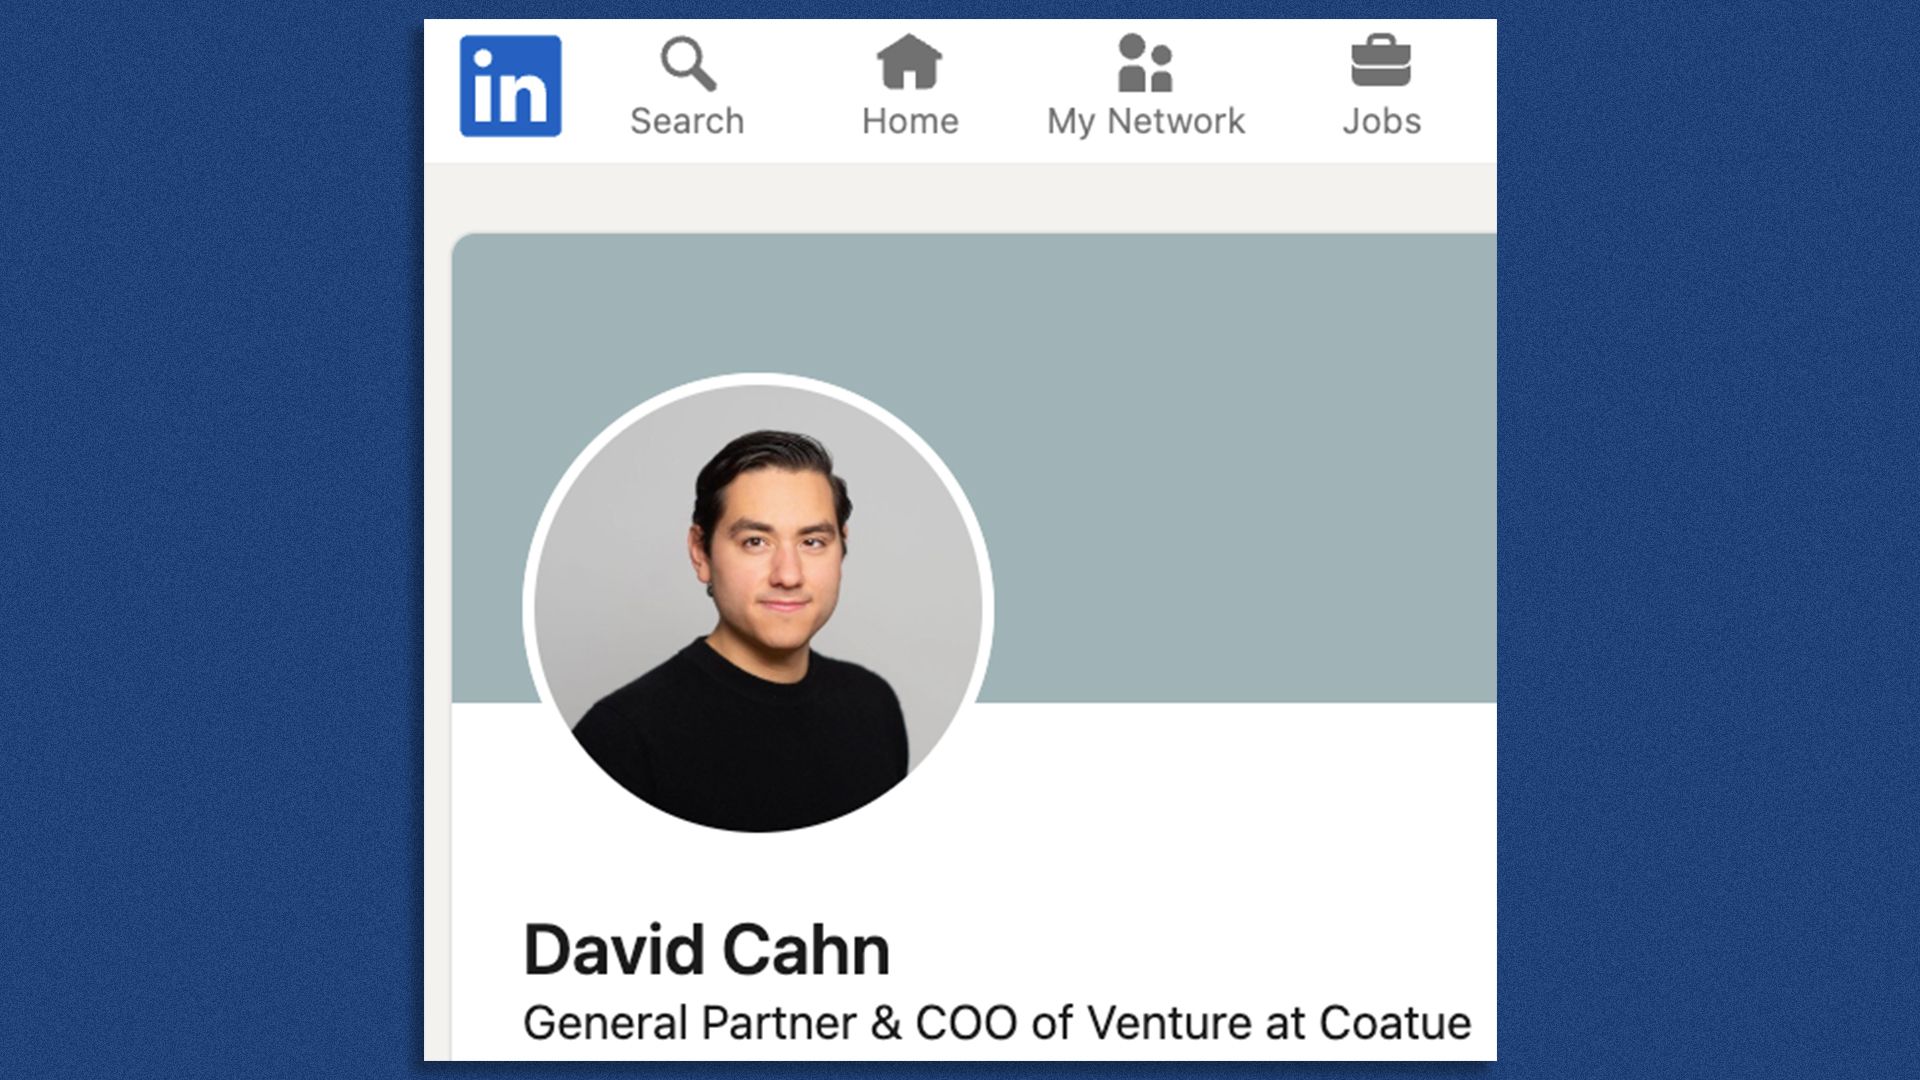 David Cahn's LinkedIn profile.